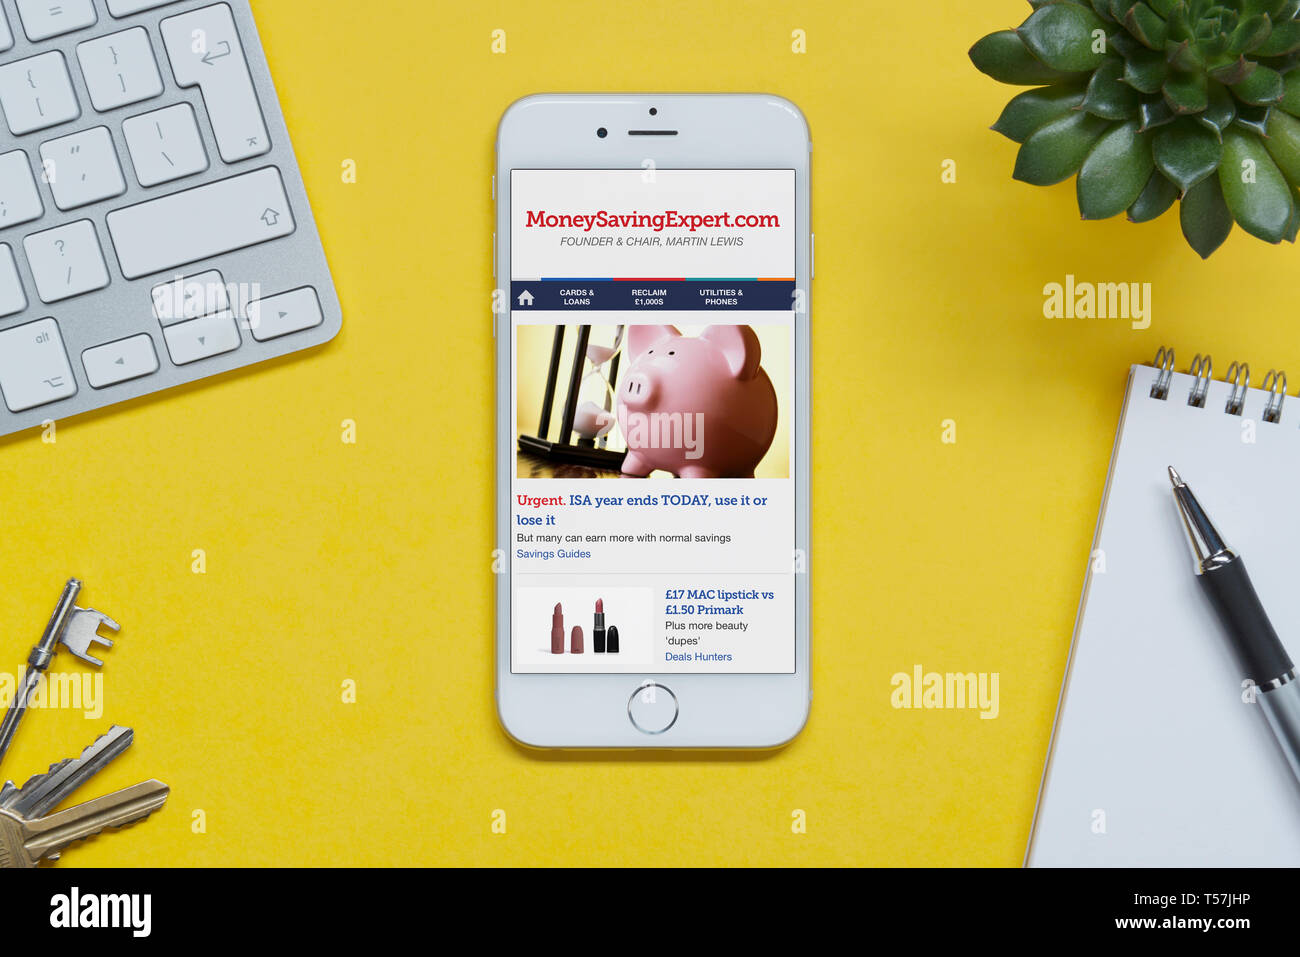 Un iPhone montrant le site web d'experts d'économie d'argent repose sur un fond jaune table avec un clavier, les touches, le bloc-notes et des plantes (usage éditorial uniquement). Banque D'Images